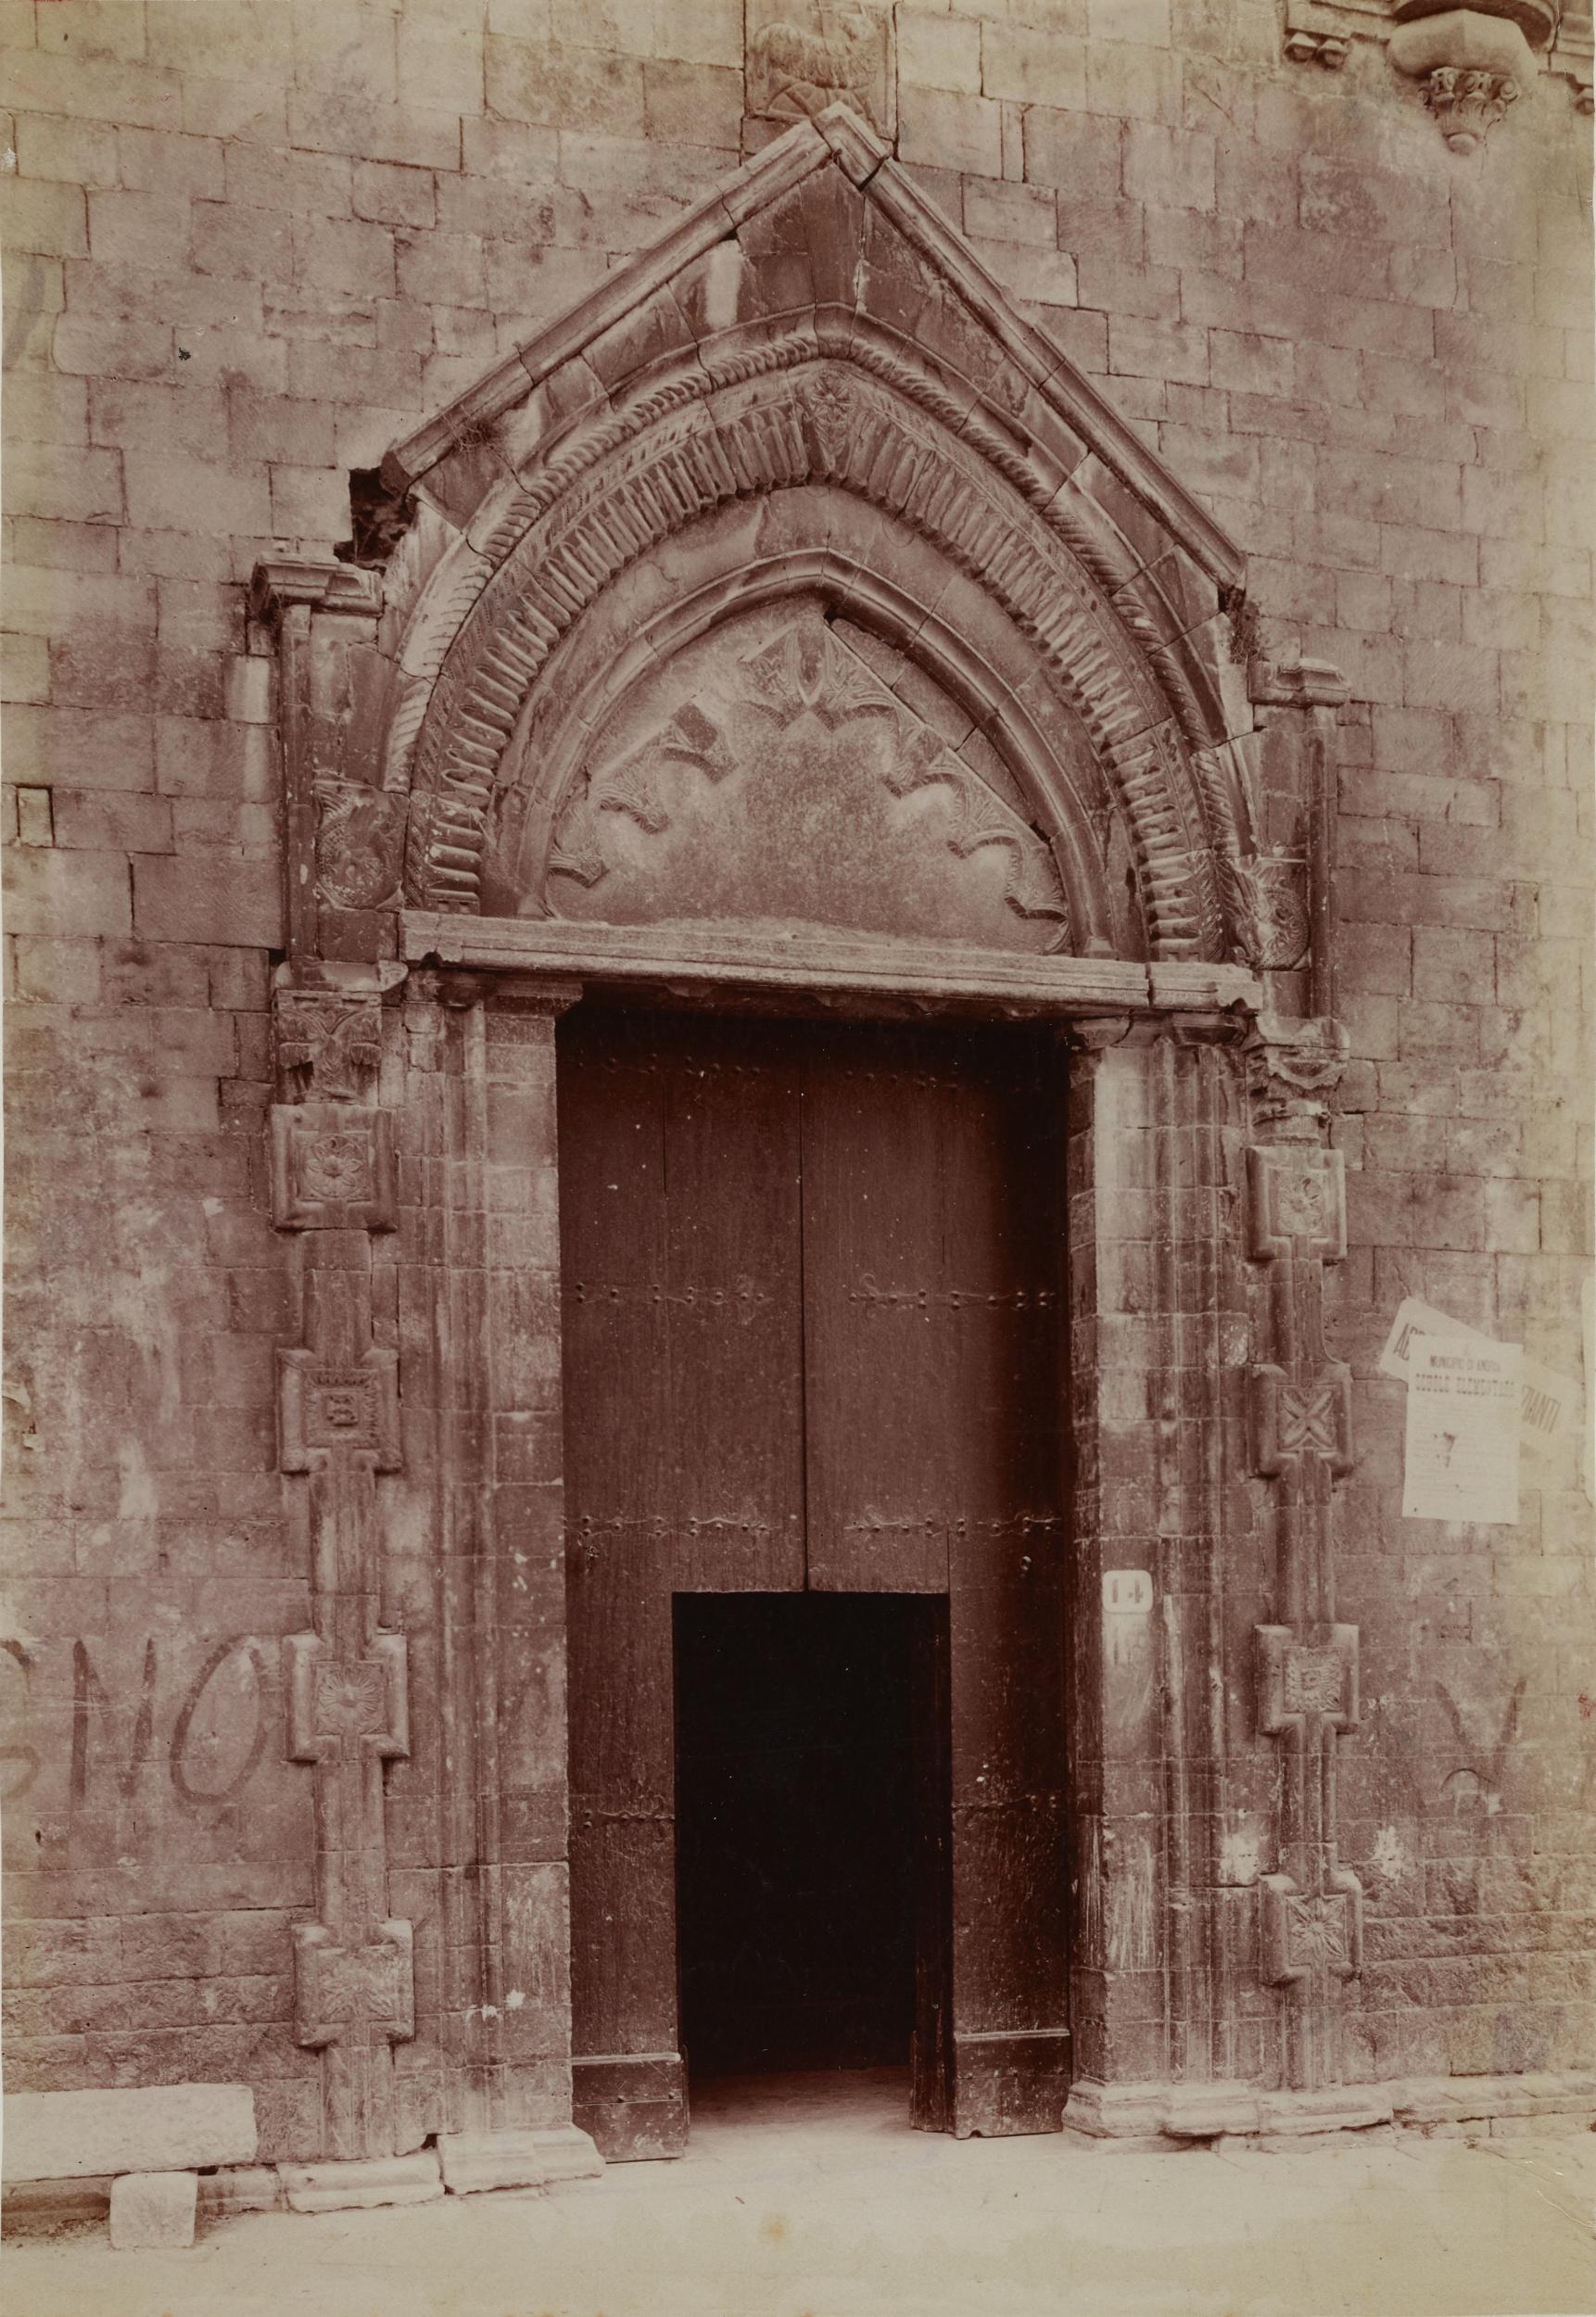 Fotografo non identificato, Andria - Basilica di S. Francesco, portale principale, 1904-1915, albumina/carta, MPI131873